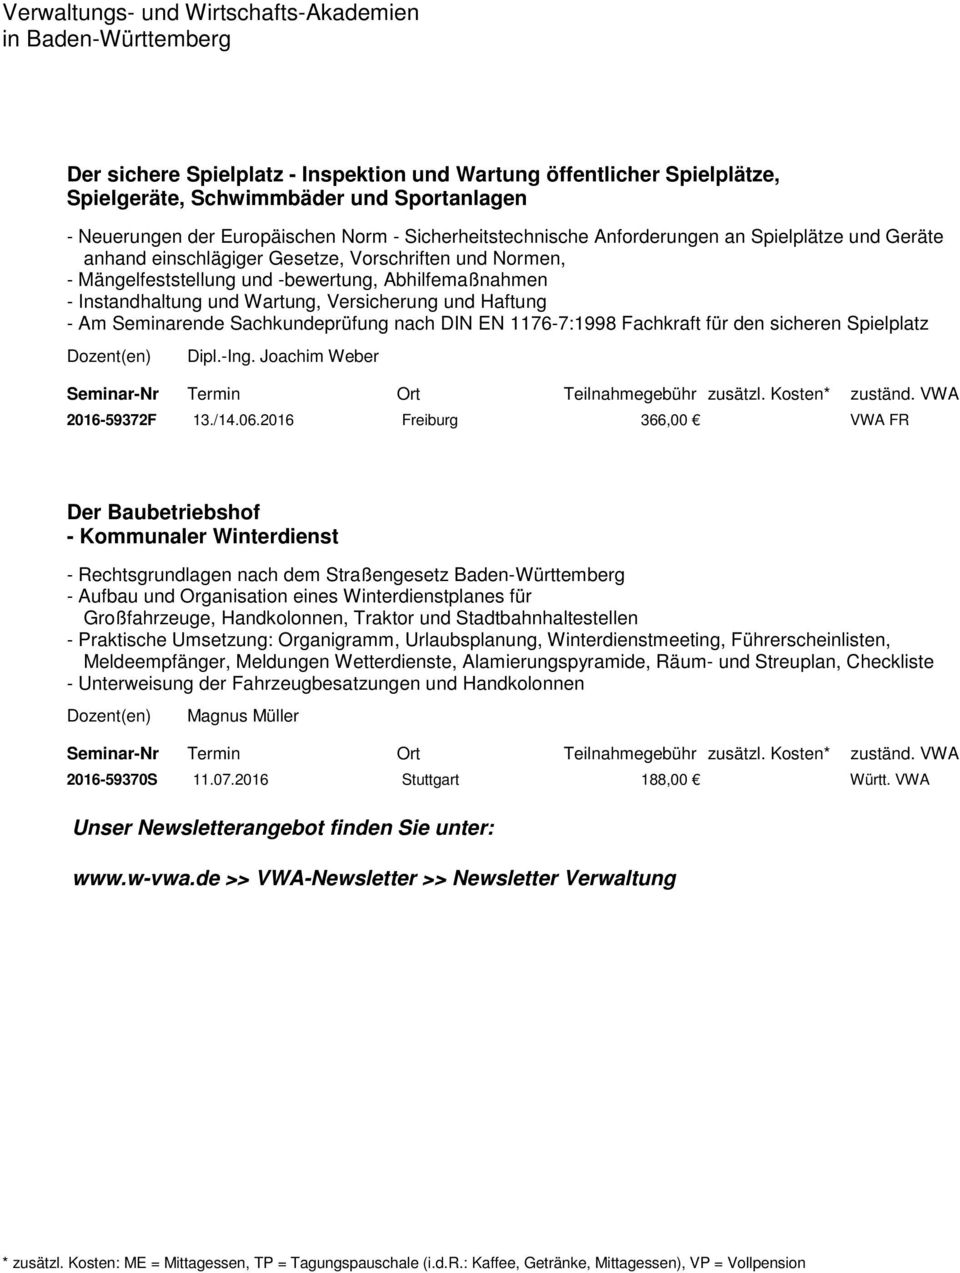 Seminarende Sachkundeprüfung nach DIN EN 1176-7:1998 Fachkraft für den sicheren Spielplatz Dipl.-Ing. Joachim Weber 2016-59372F 13./14.06.